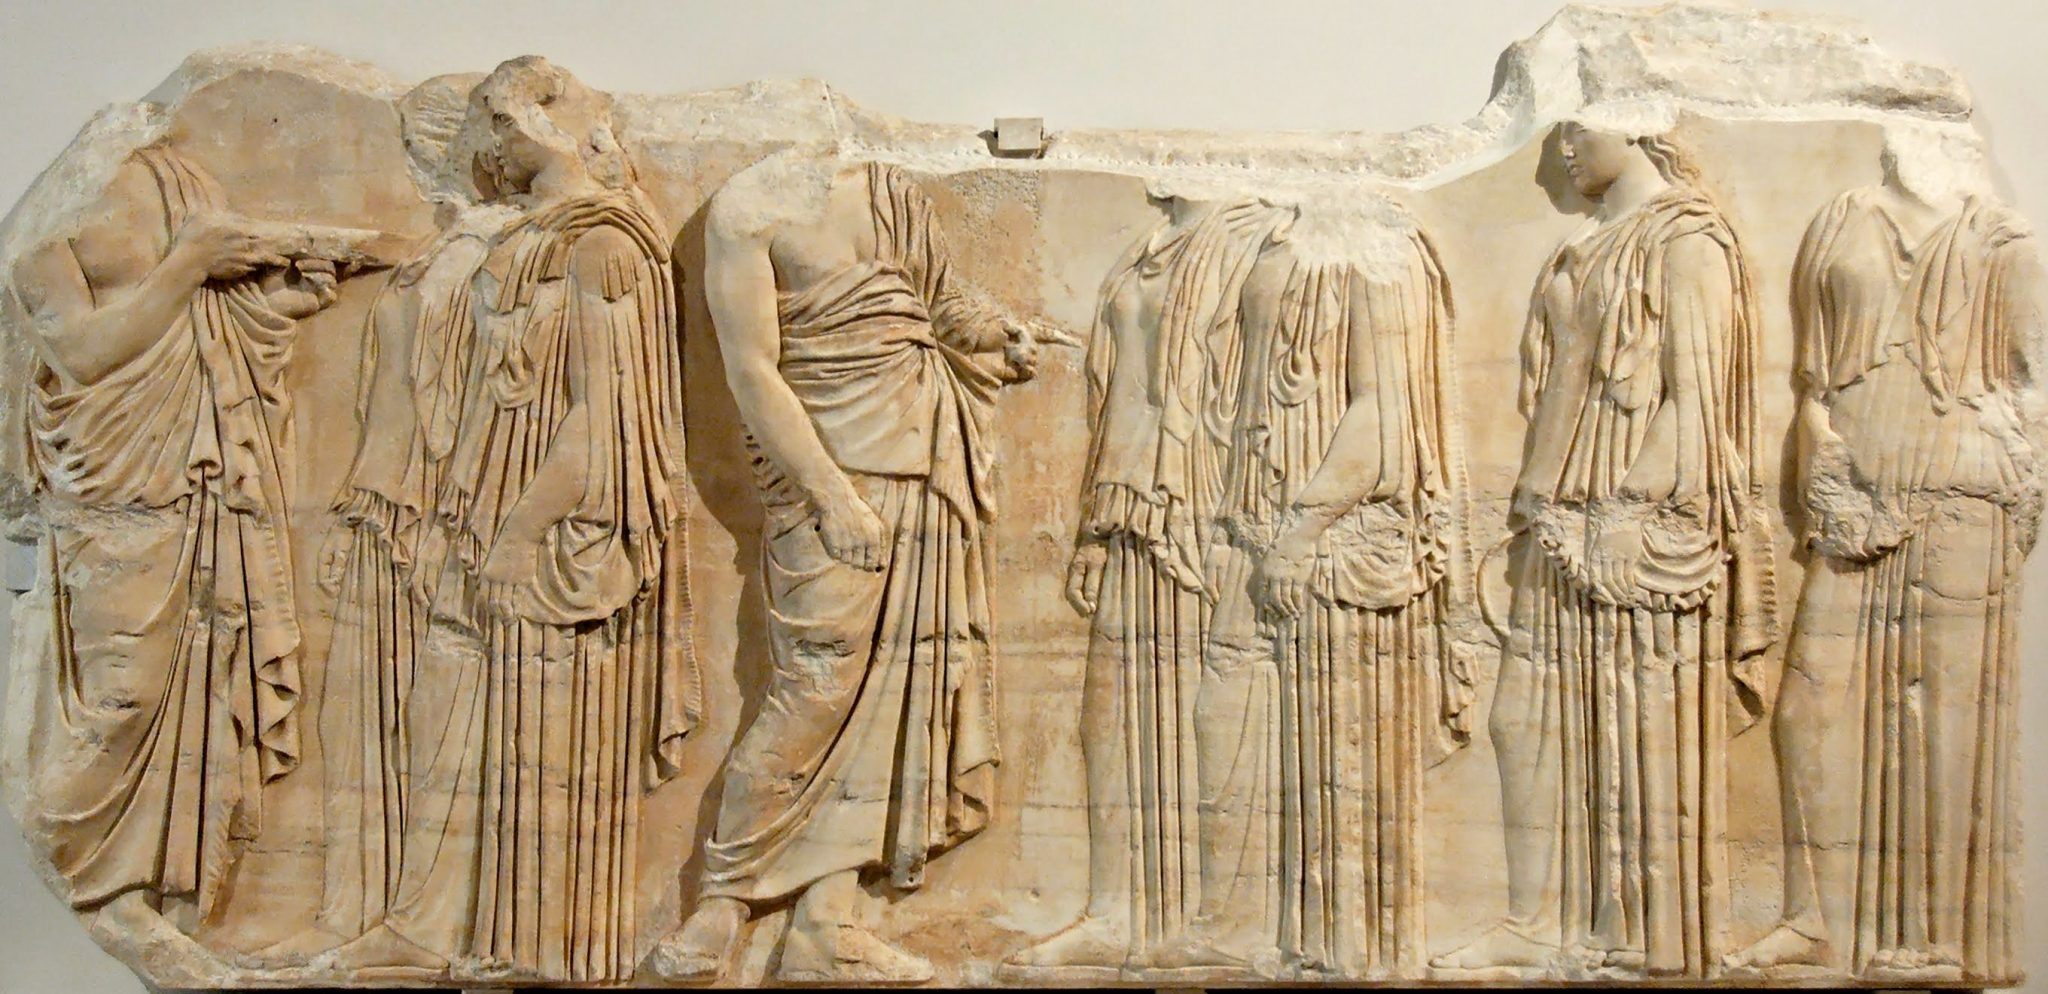 Î‘Ï€Î¿Ï„Î­Î»ÎµÏƒÎ¼Î± ÎµÎ¹ÎºÏŒÎ½Î±Ï‚ Î³Î¹Î± Il fregio in marmo che sarÃ  prestato dal Louvre